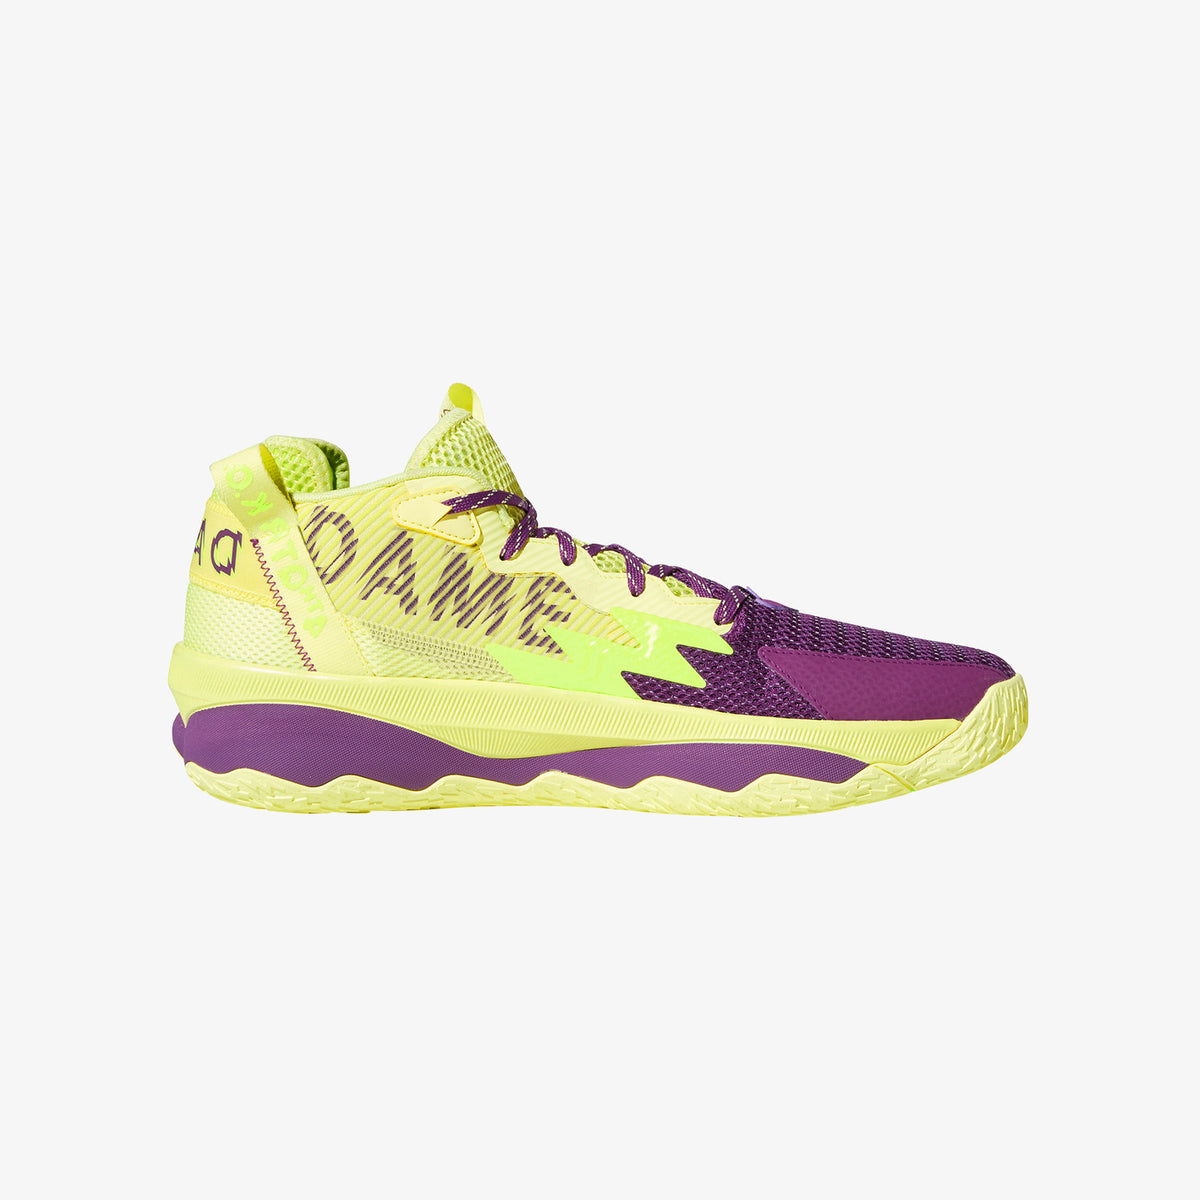 Dame 8 Junior - Yellow/Purple